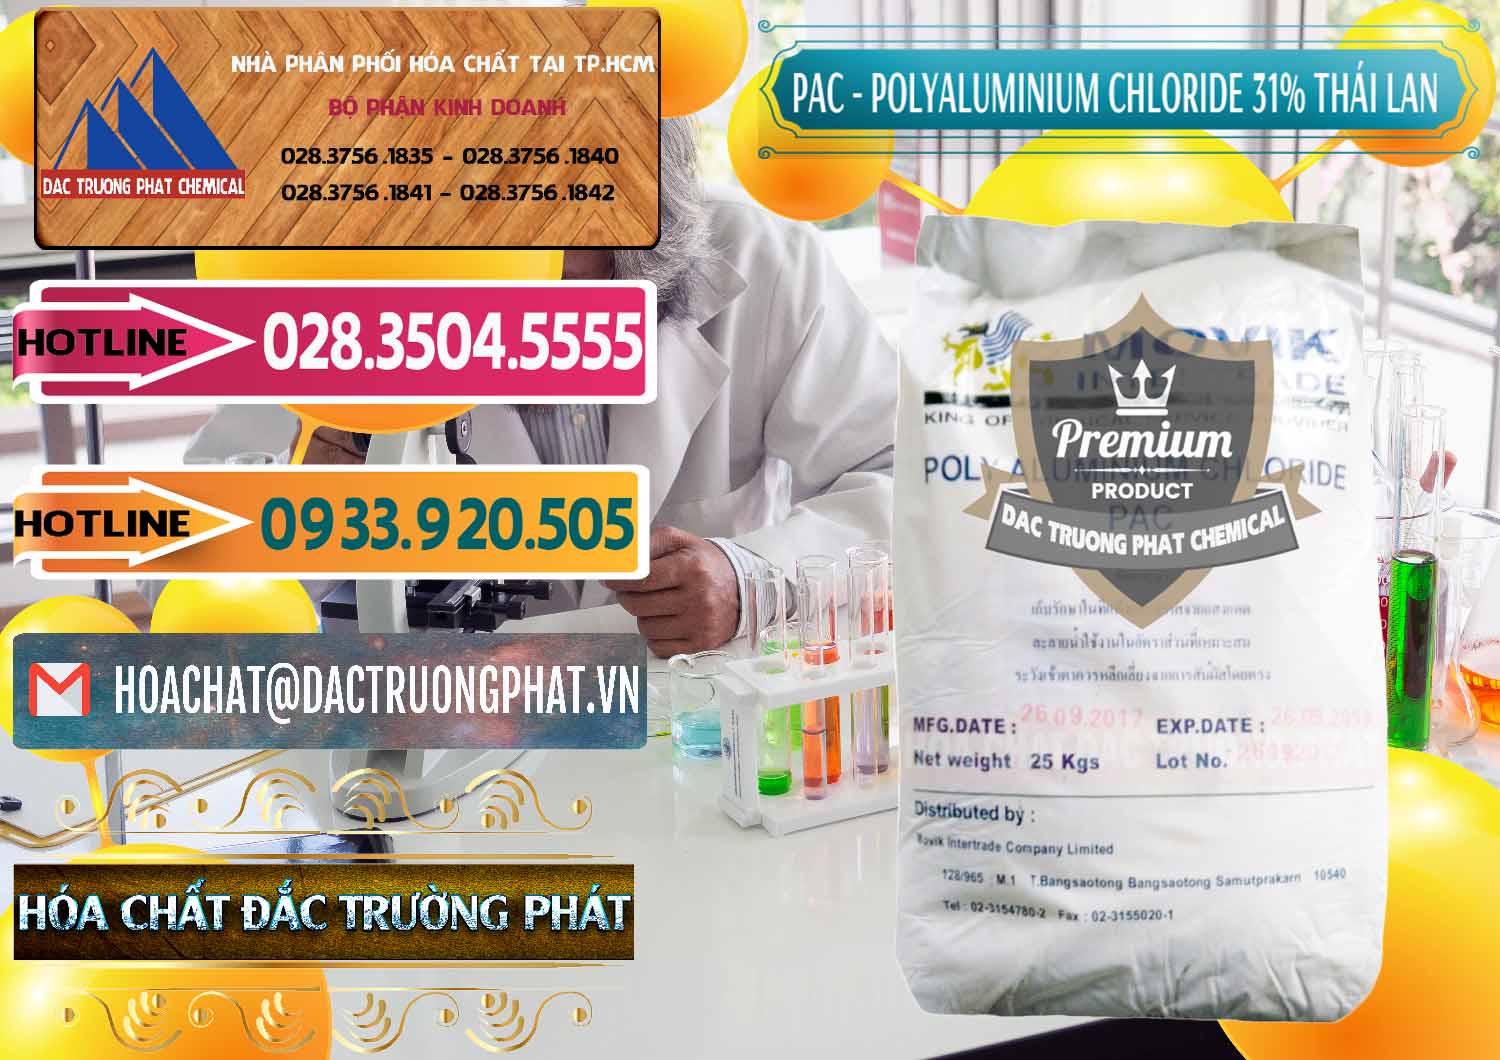 Công ty kinh doanh _ bán PAC - Polyaluminium Chloride 31% Thái Lan Thailand - 0469 - Cung cấp hóa chất tại TP.HCM - dactruongphat.vn